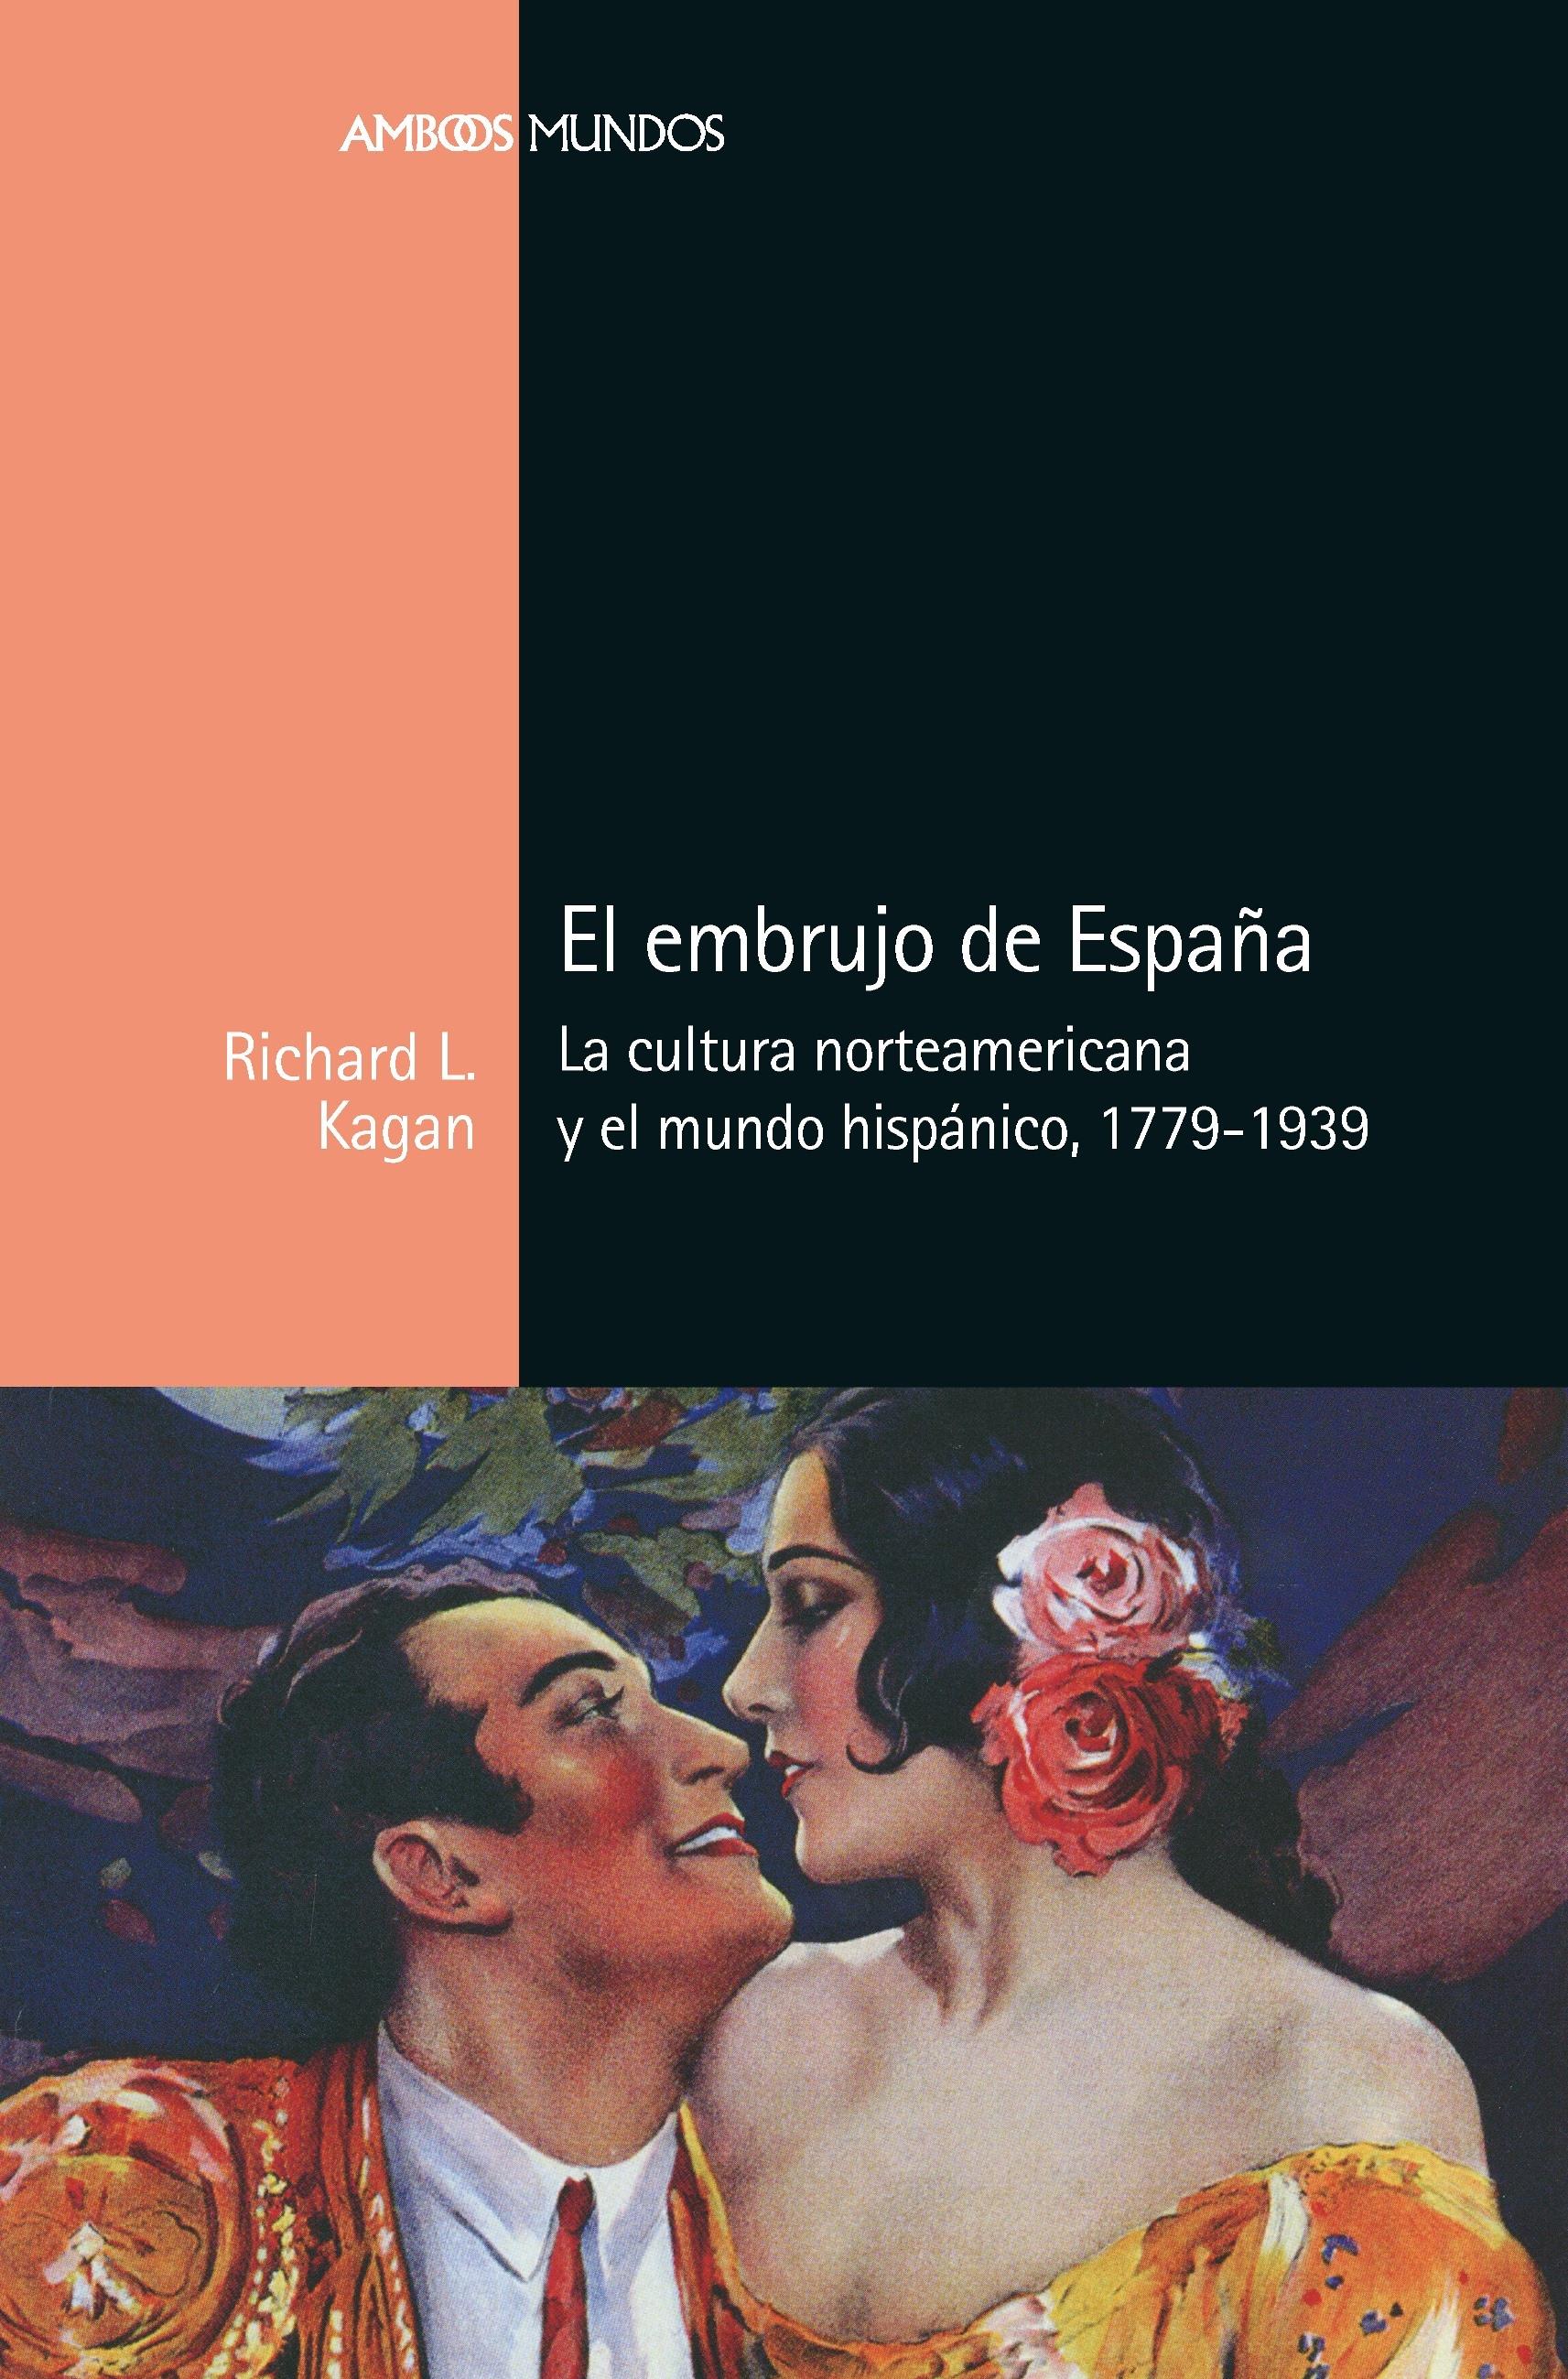 El embrujo de España "La cultura norteamericana y el mundo hispánico, 1779-1939"